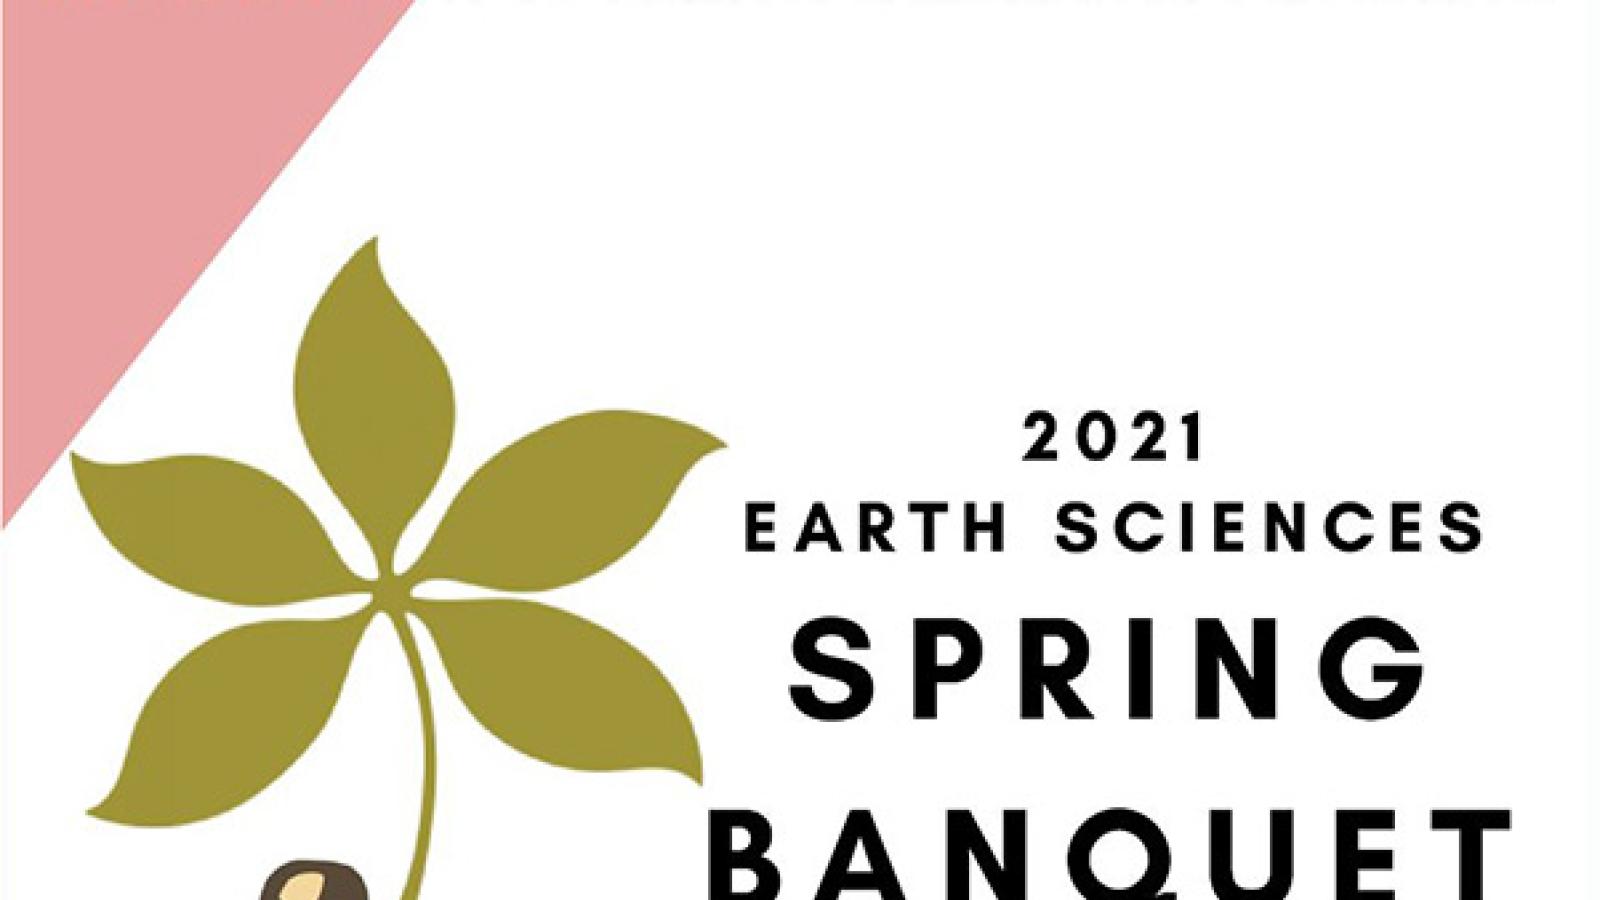 2021 Spring banquet